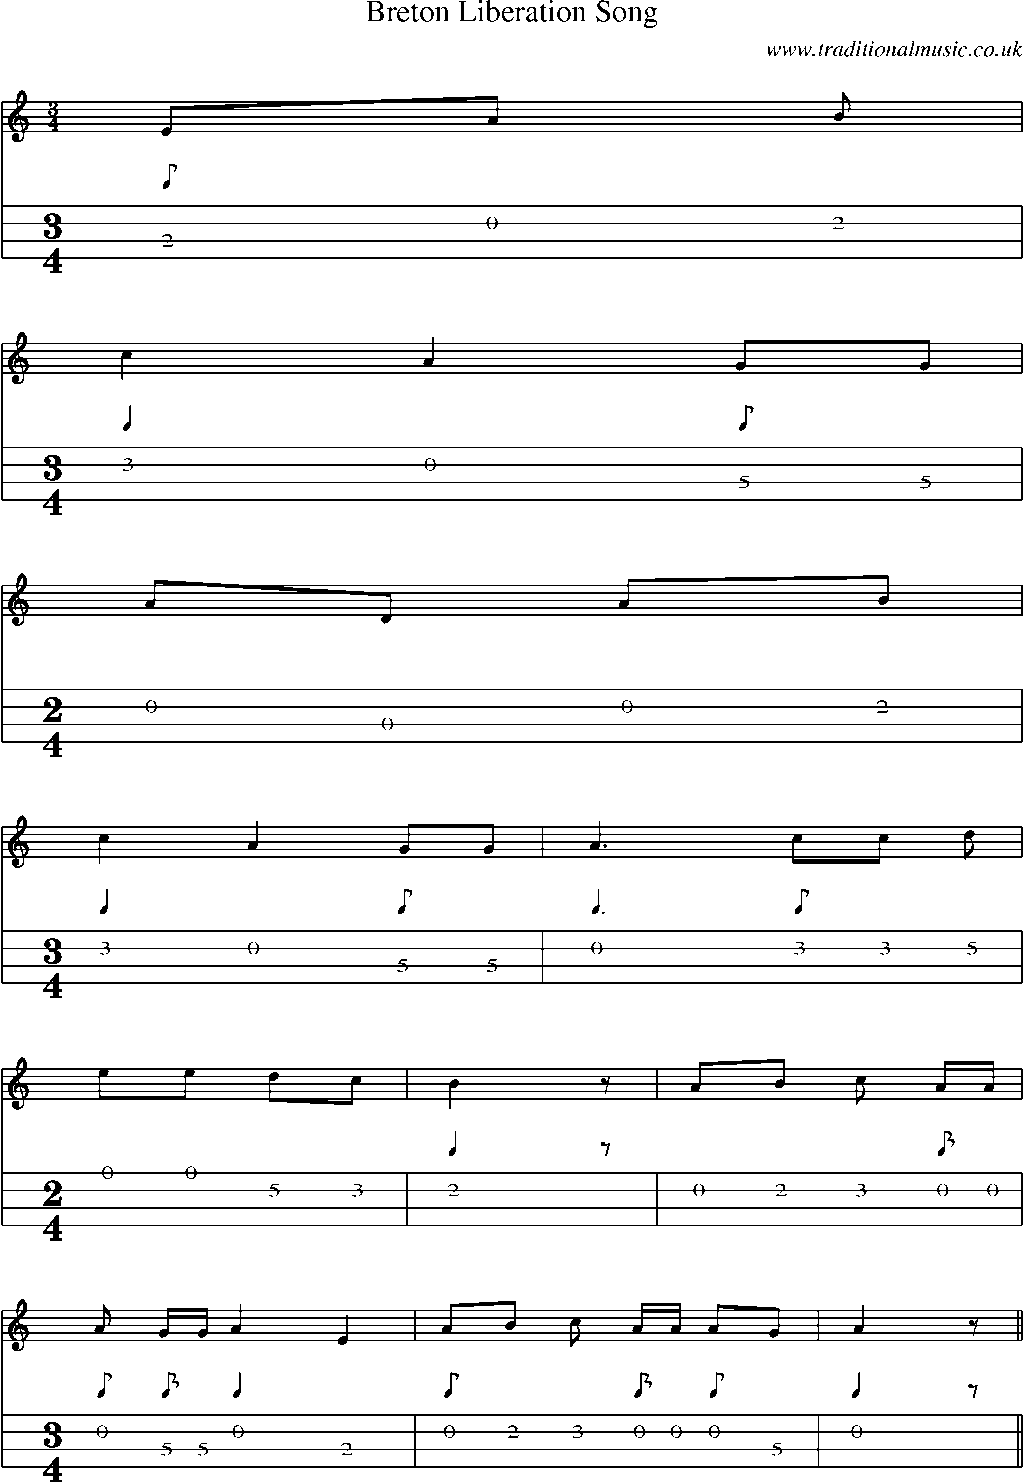 Mandolin Tab and Sheet Music for Breton Liberation Song